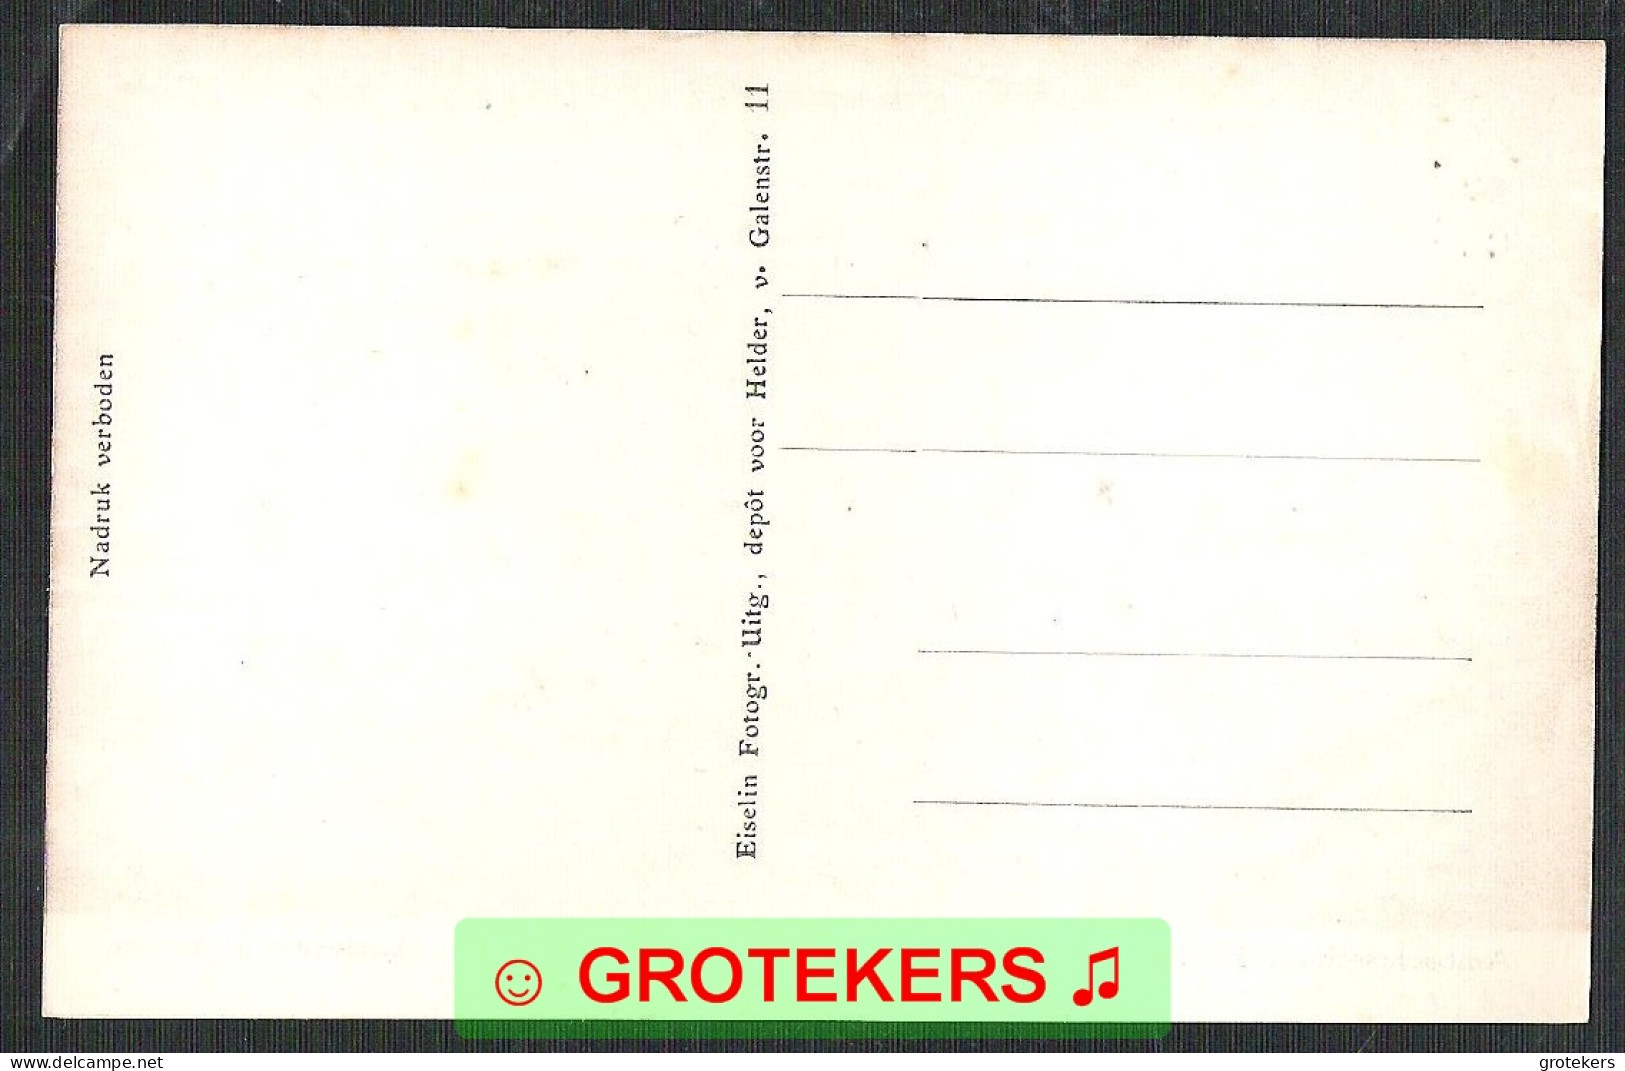 DEN HELDER Ambachtsschool Leslokaal Timmeren Ca 1920 - Den Helder